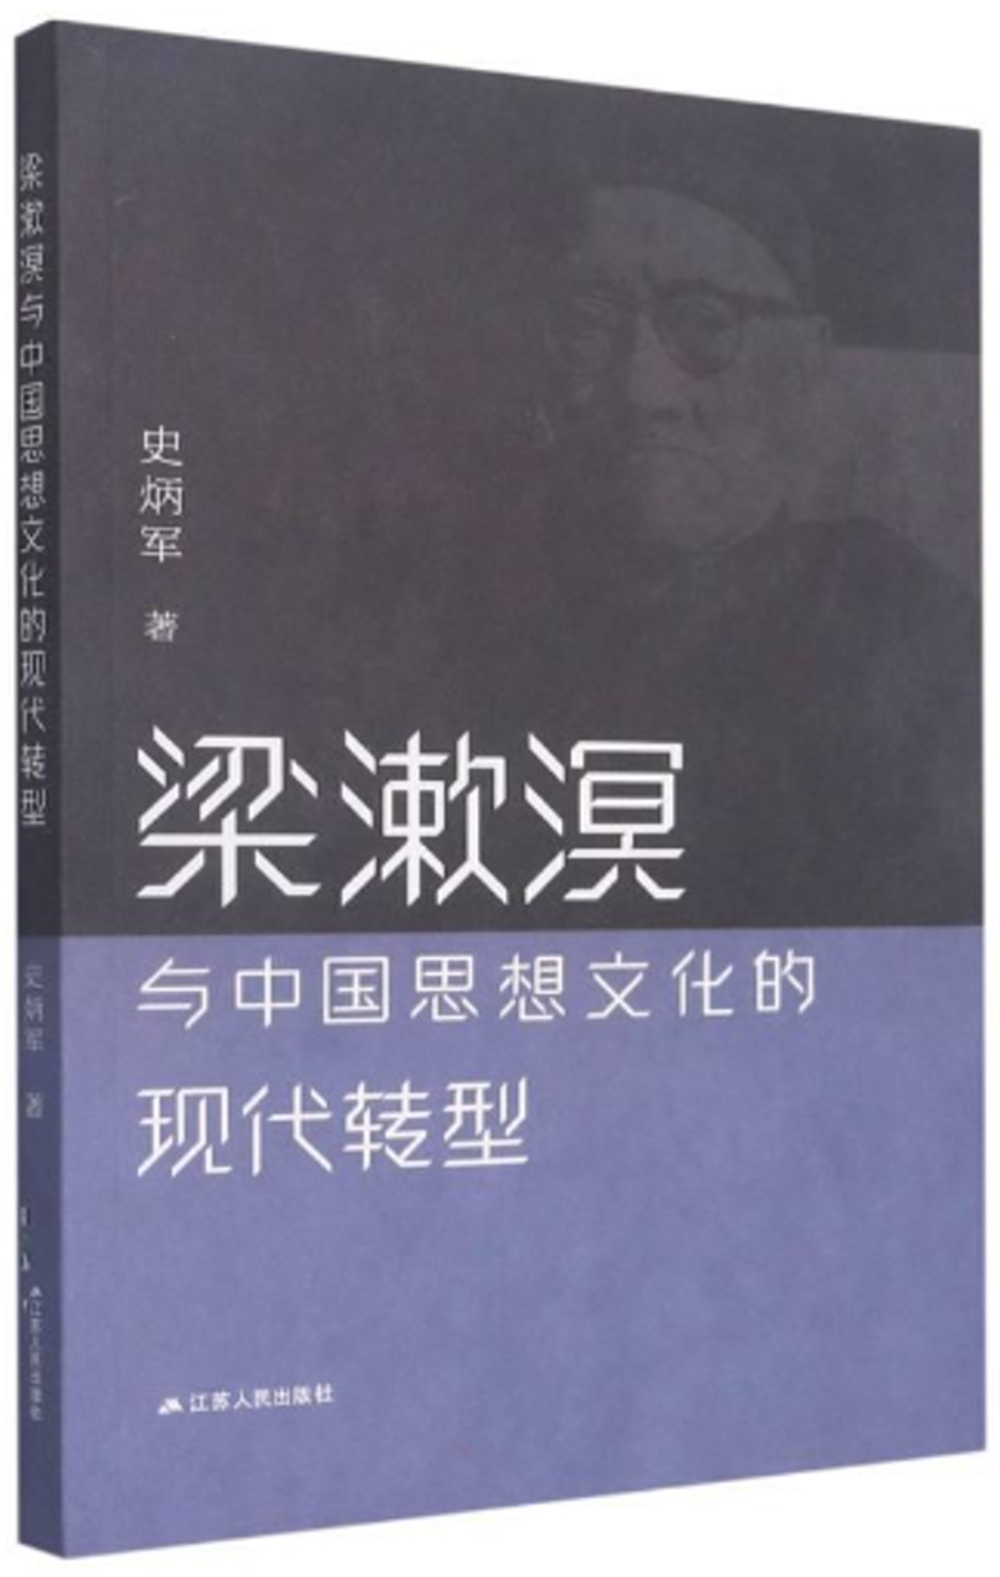 梁漱溟與中國思想文化的現代轉型